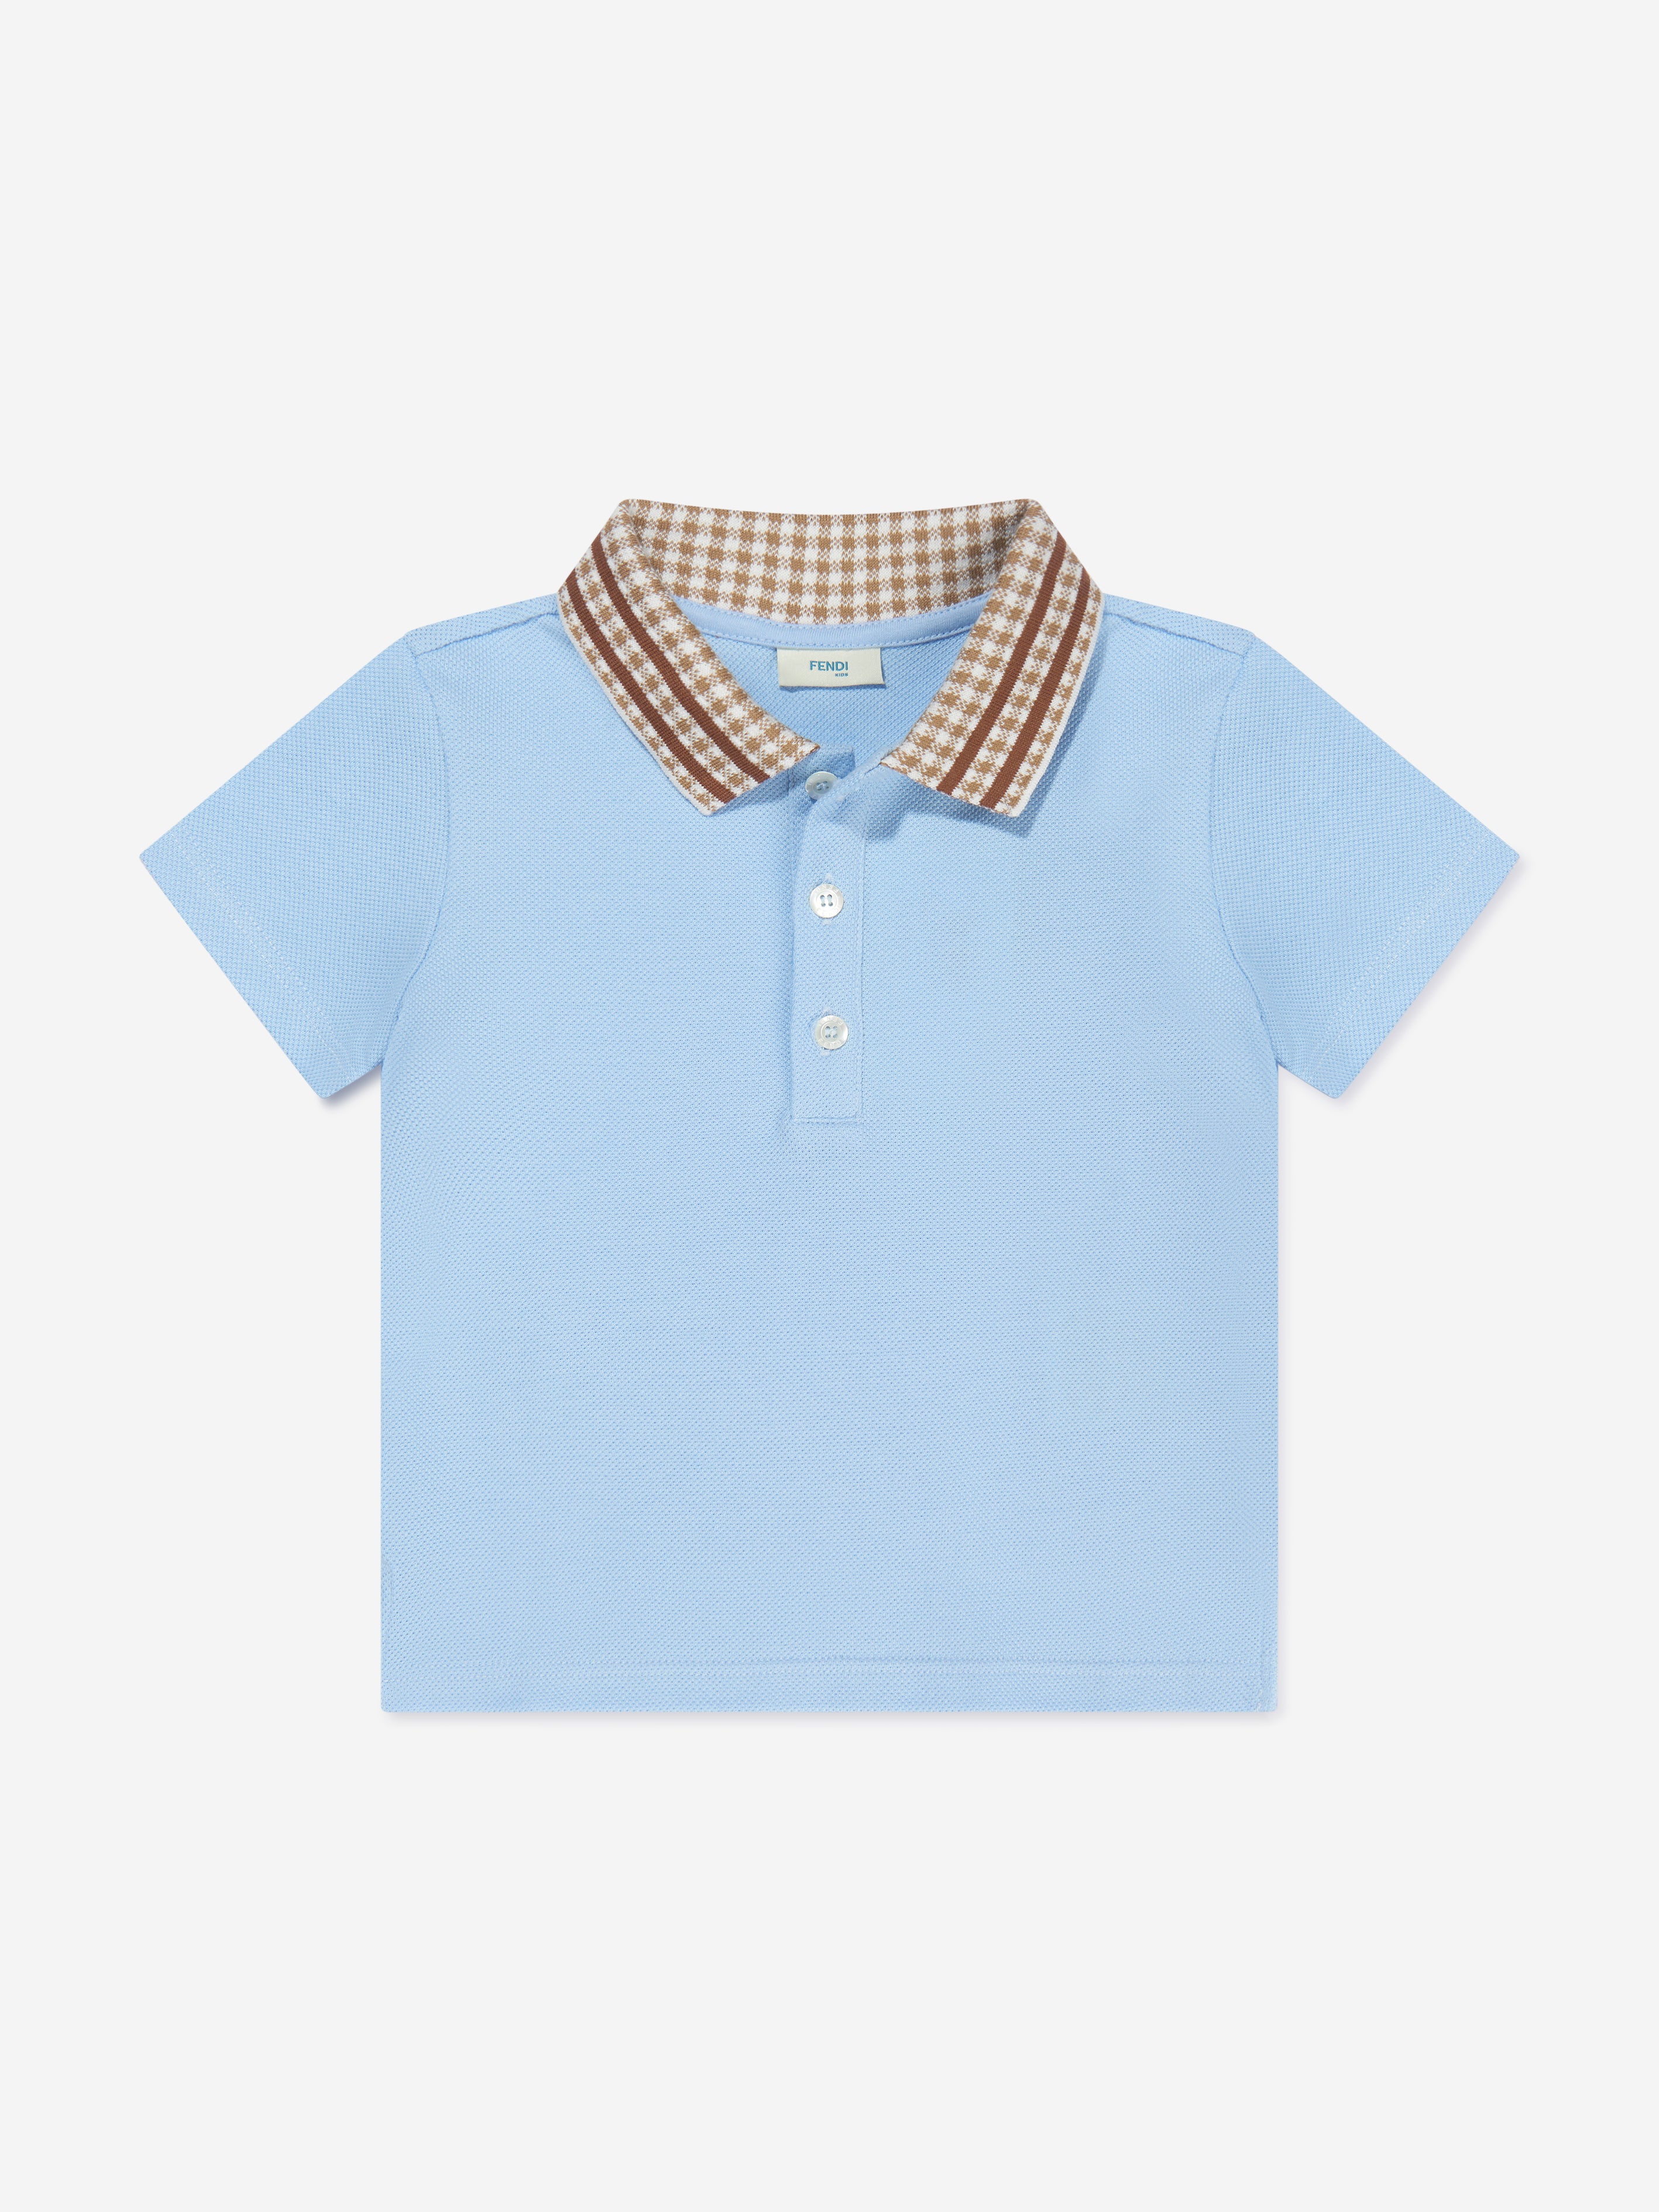 Fendi Baby Boys Pique Polo Shirt In Blue